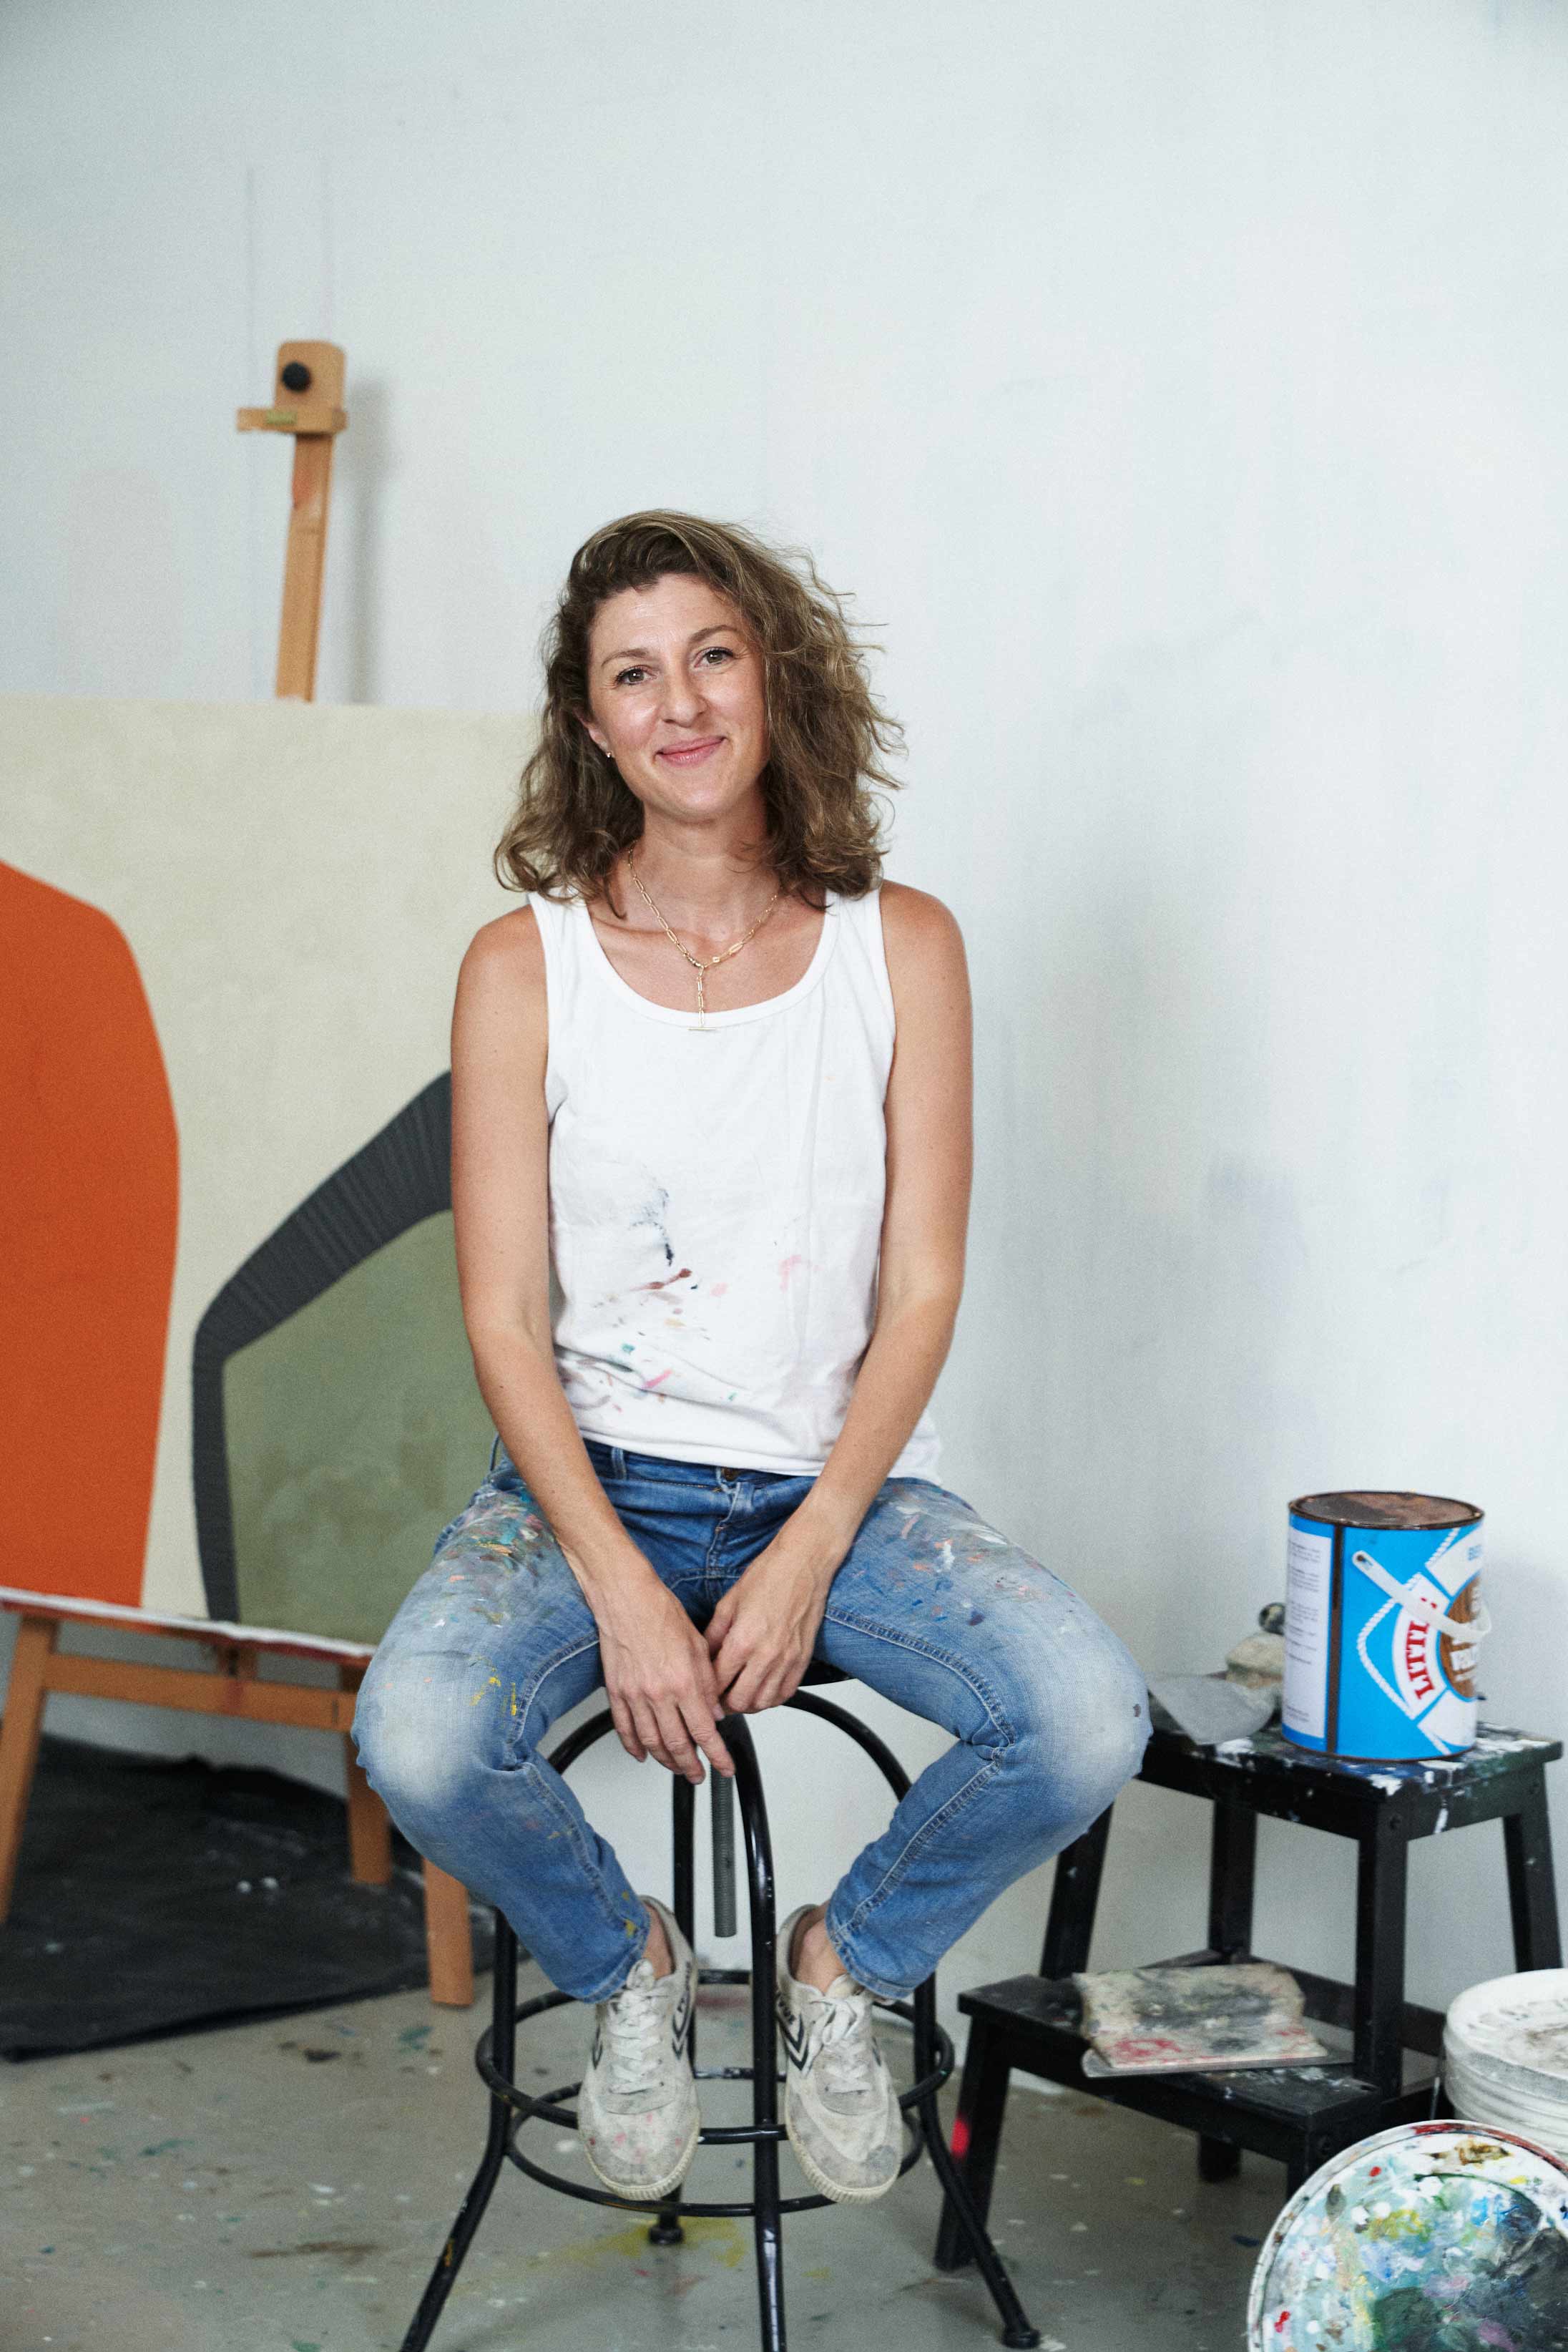 Hong Kong visual artist and muralist Elsa Jean de Dieu